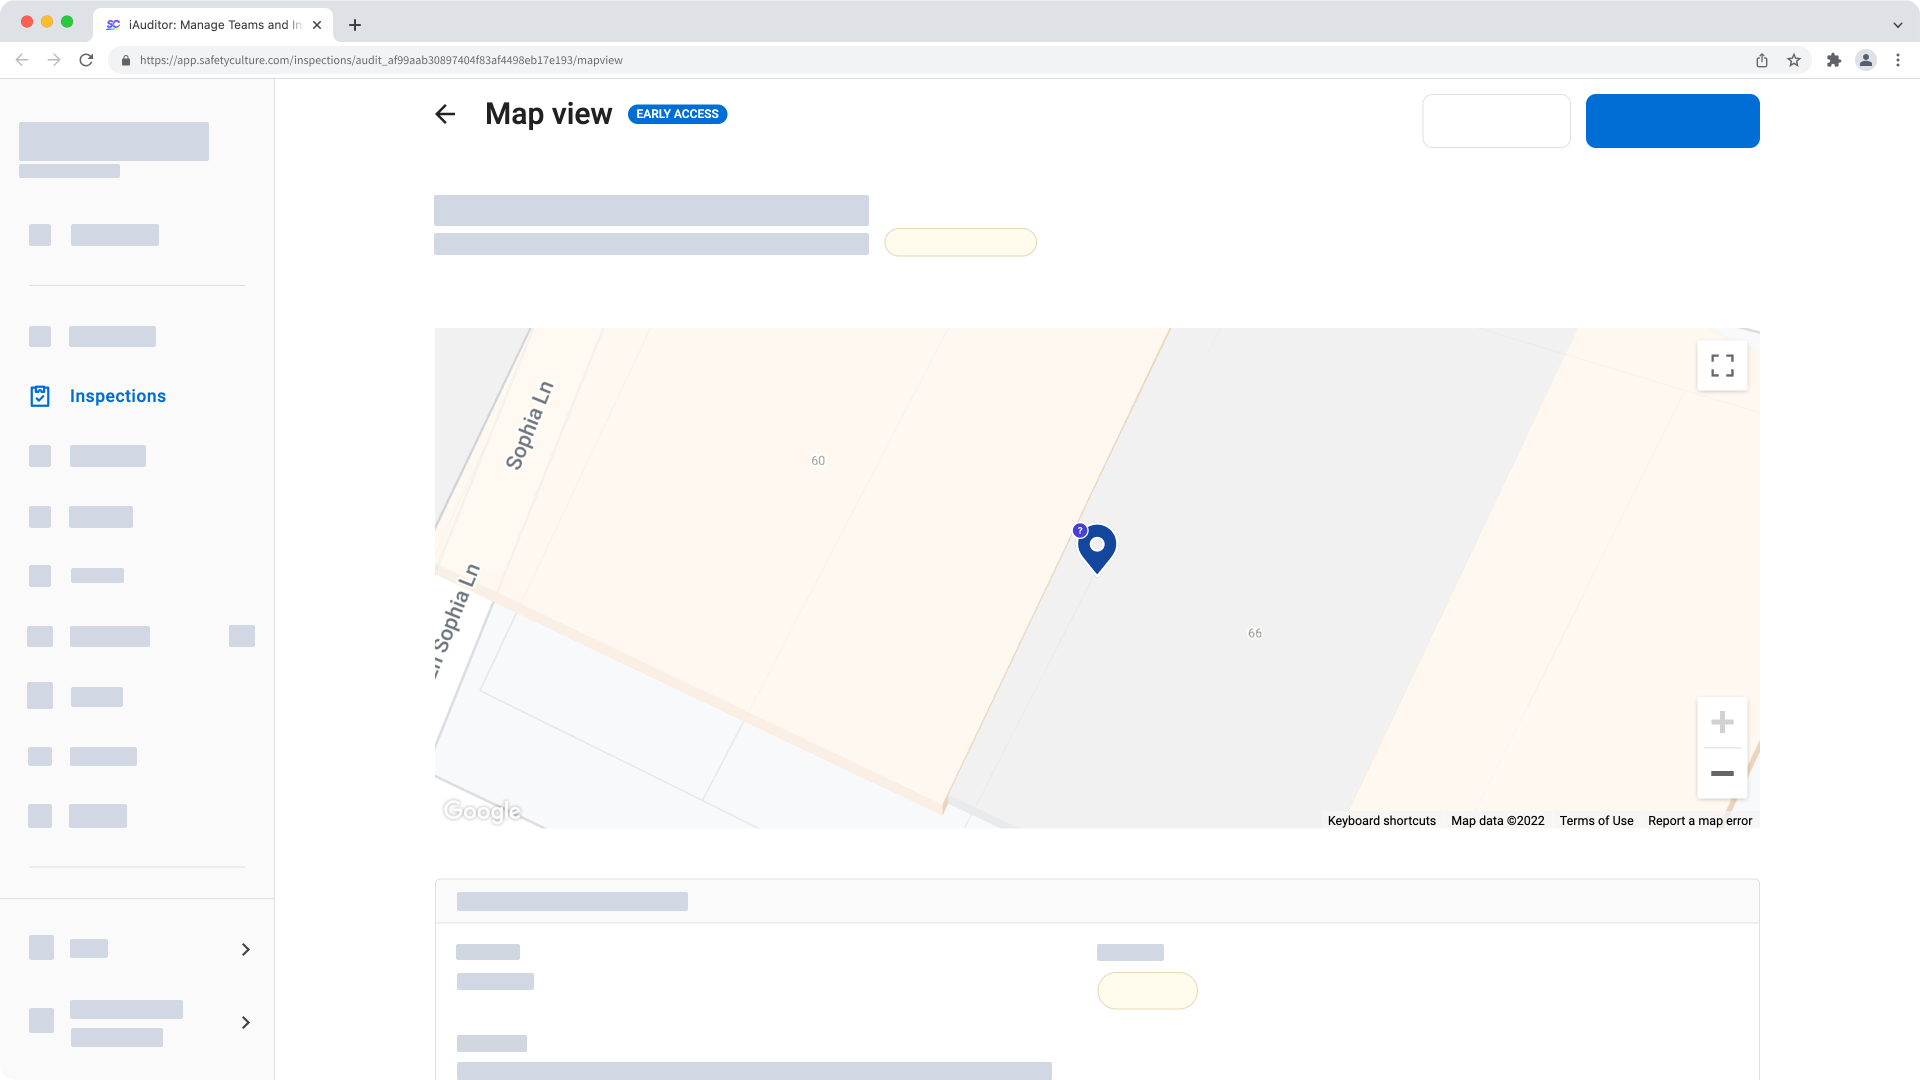 Ver la ubicación de respuesta de una inspección como un marcador en un mapa a través de la aplicación web.